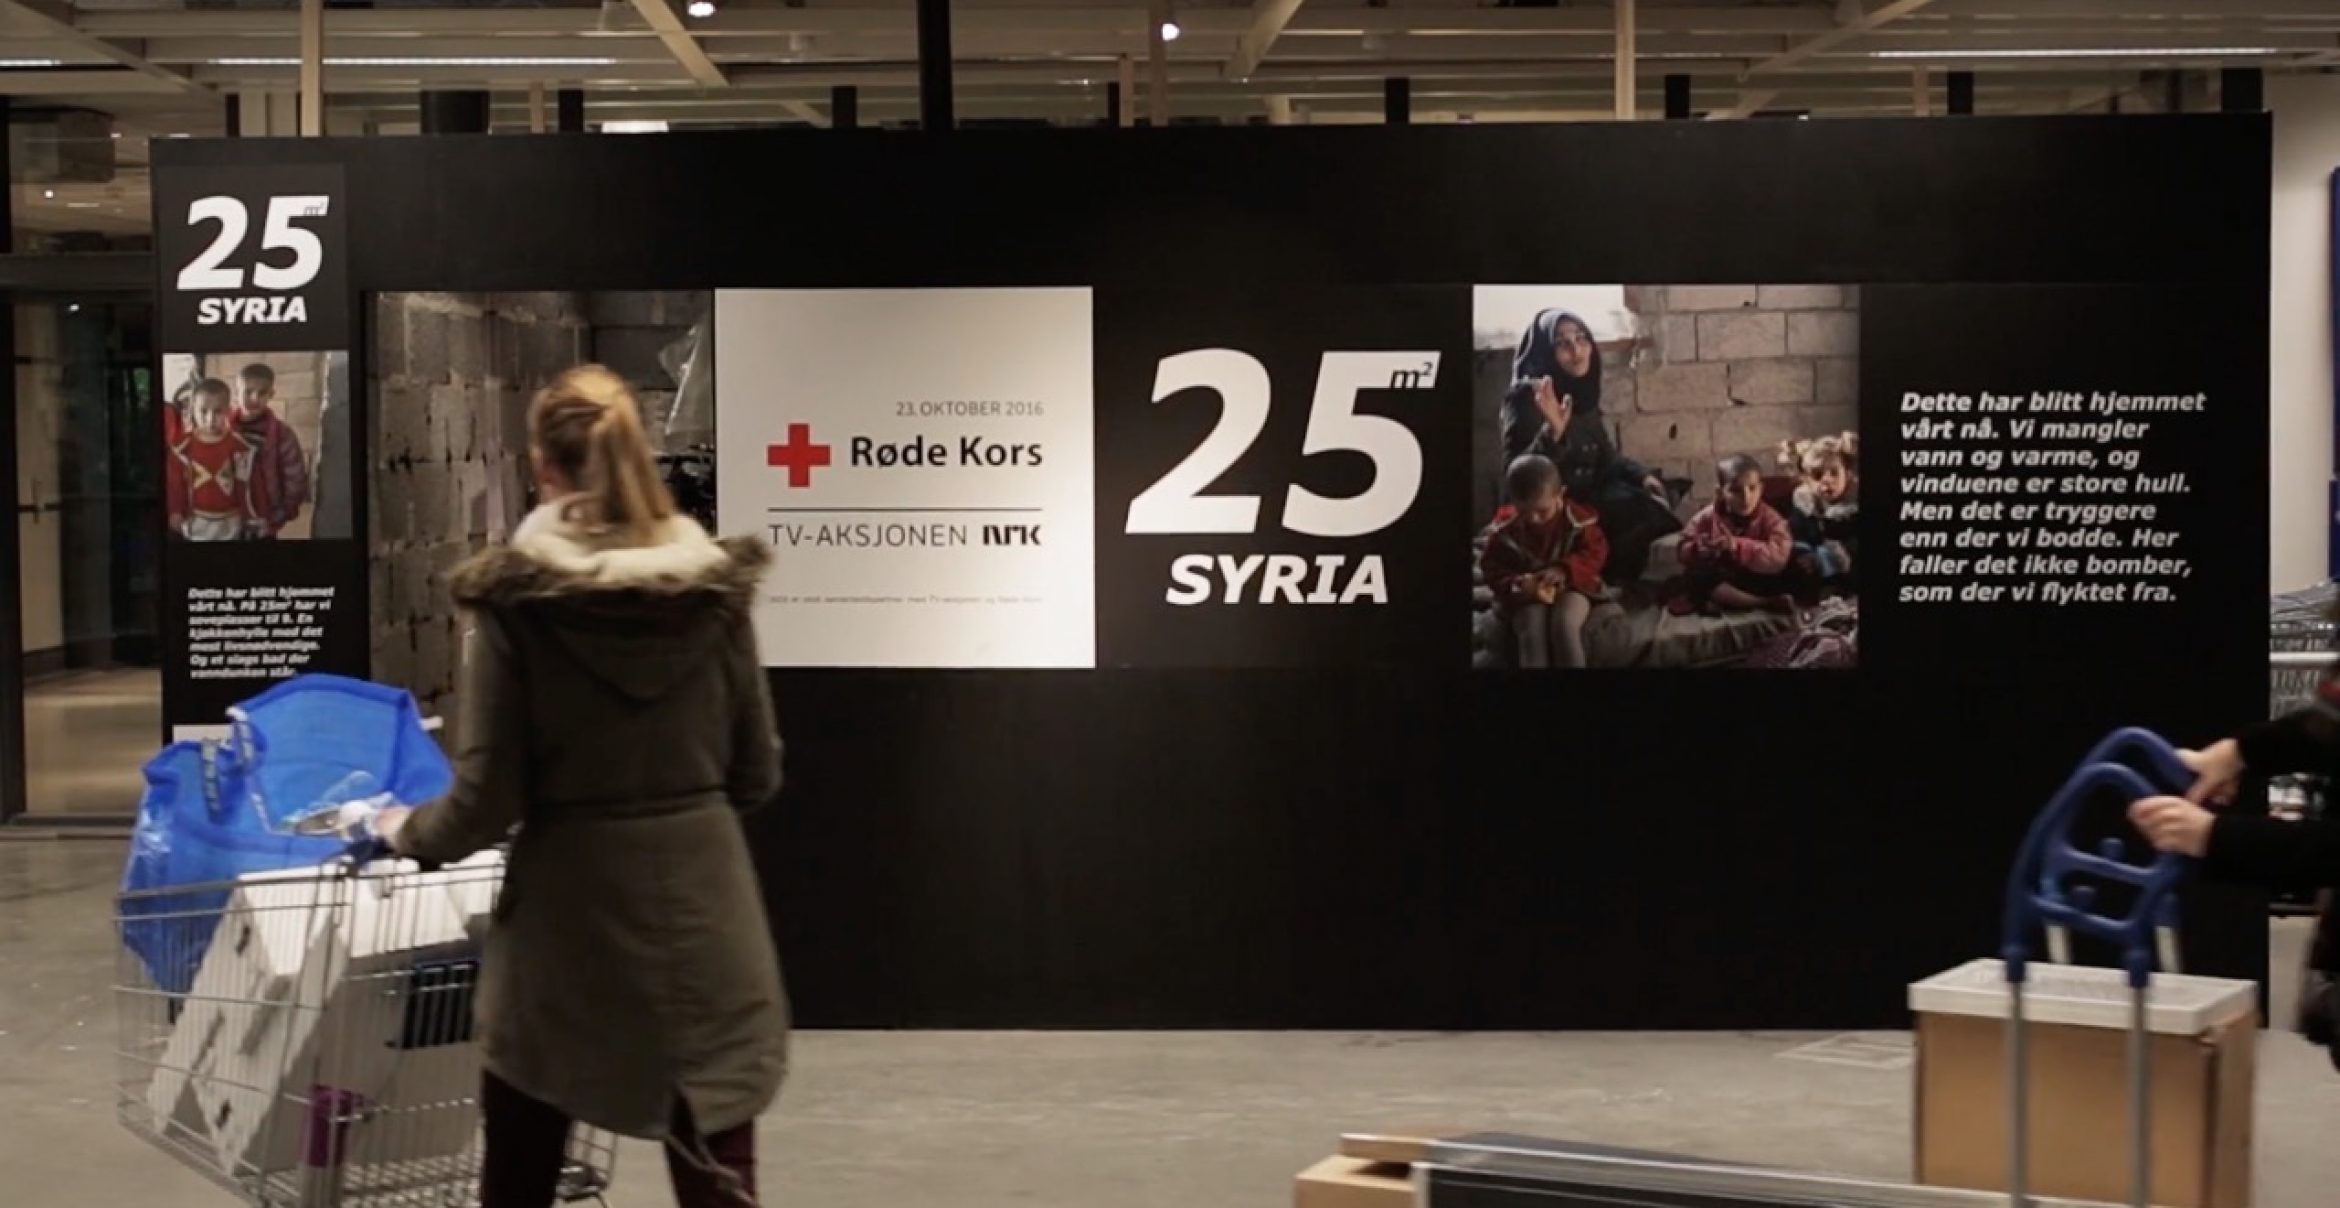 “25m2 SYRIA“: IKEA zeigt mit authentischer Kampagne, wie sich das Leben in einem Kriegsgebiet anfühlt